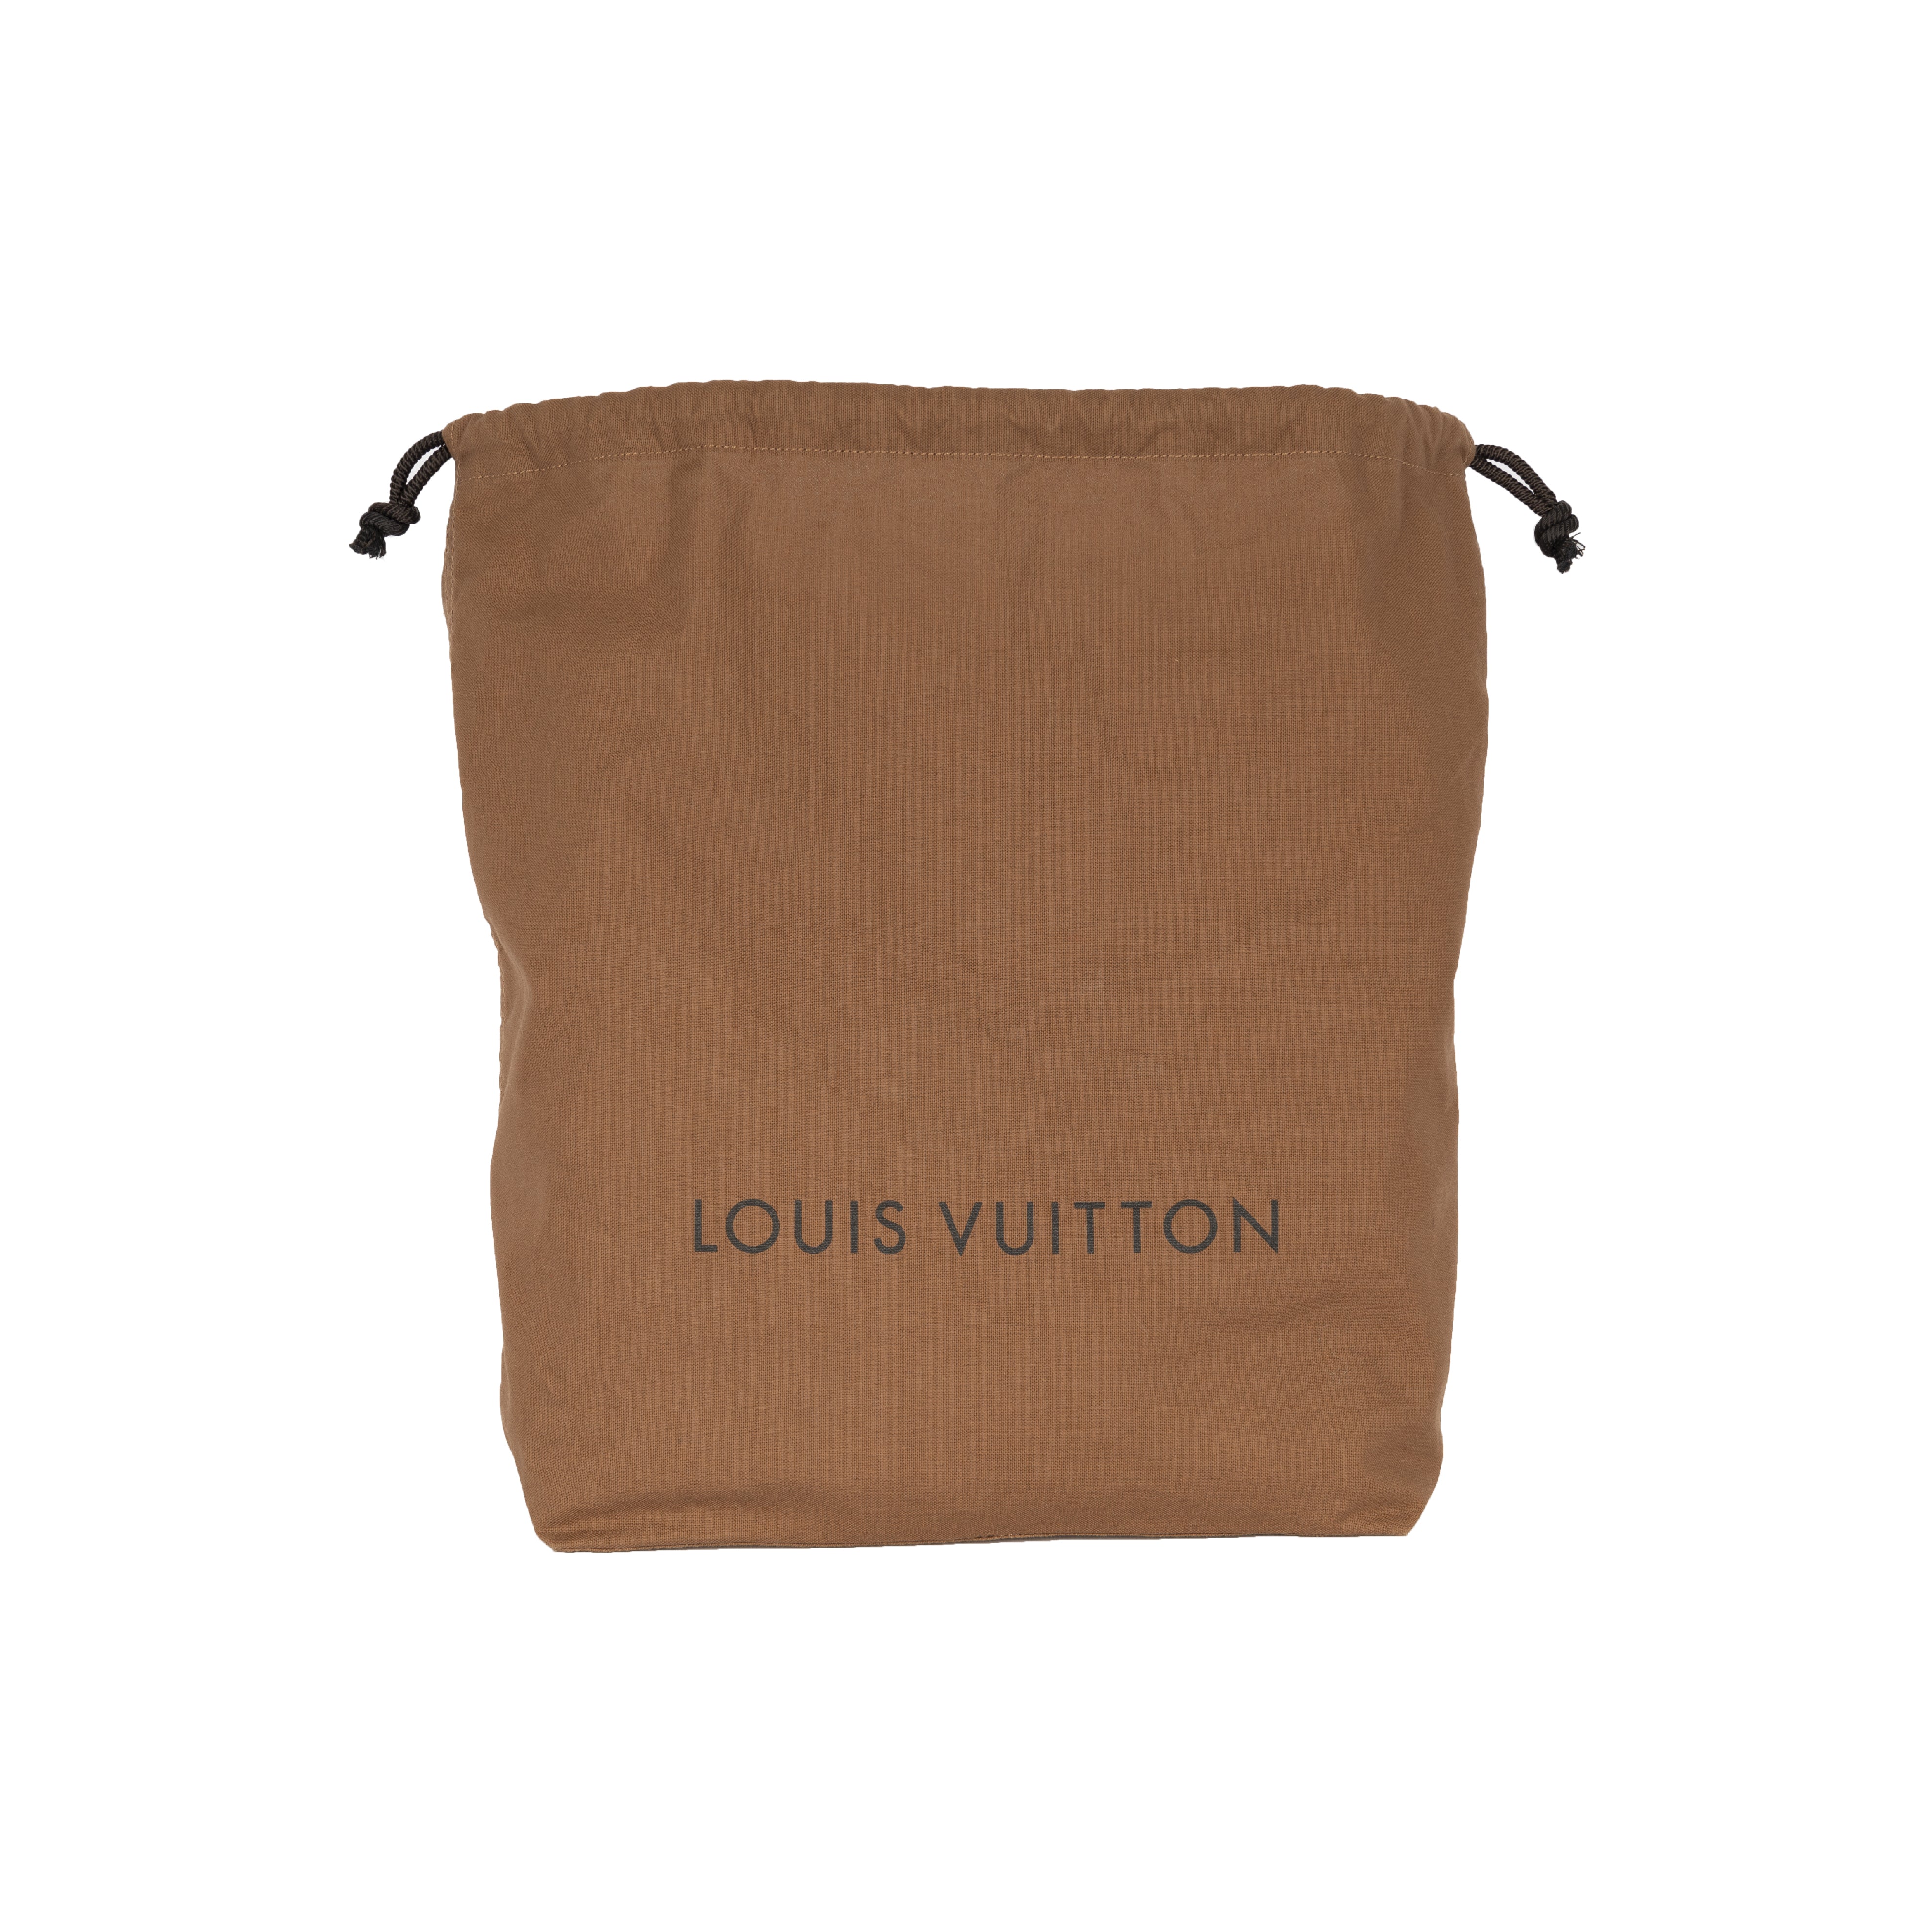 Louis Vuitton Comme des Garçons Laser-Cut Tote Bag